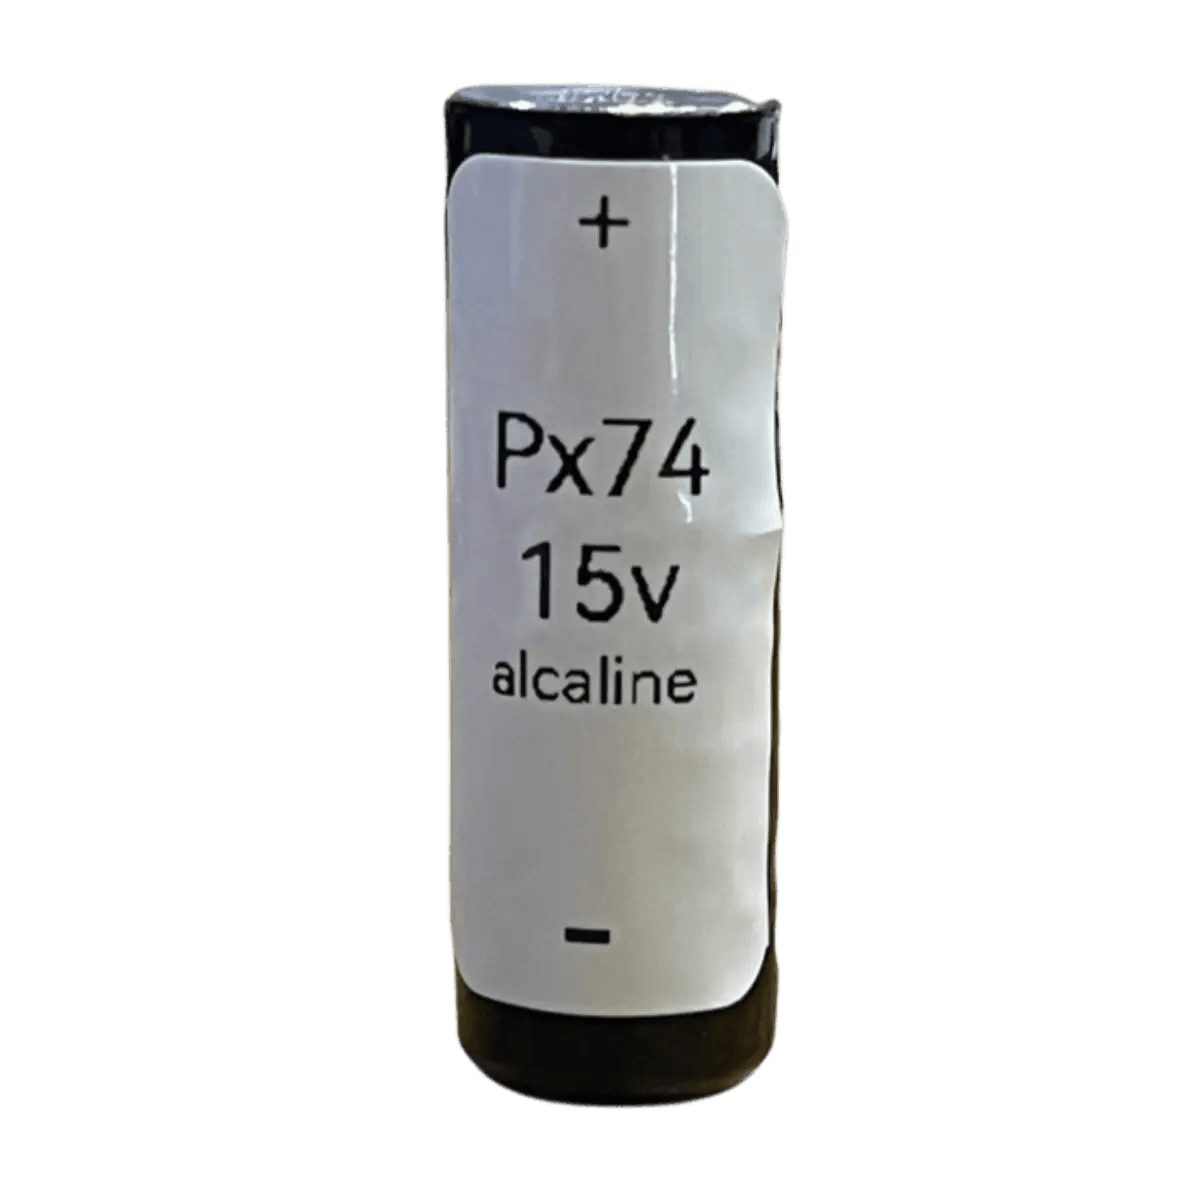 Energizer AA/L91 2900.0 mAh Ultime Piles au Lithium (Lot de 4